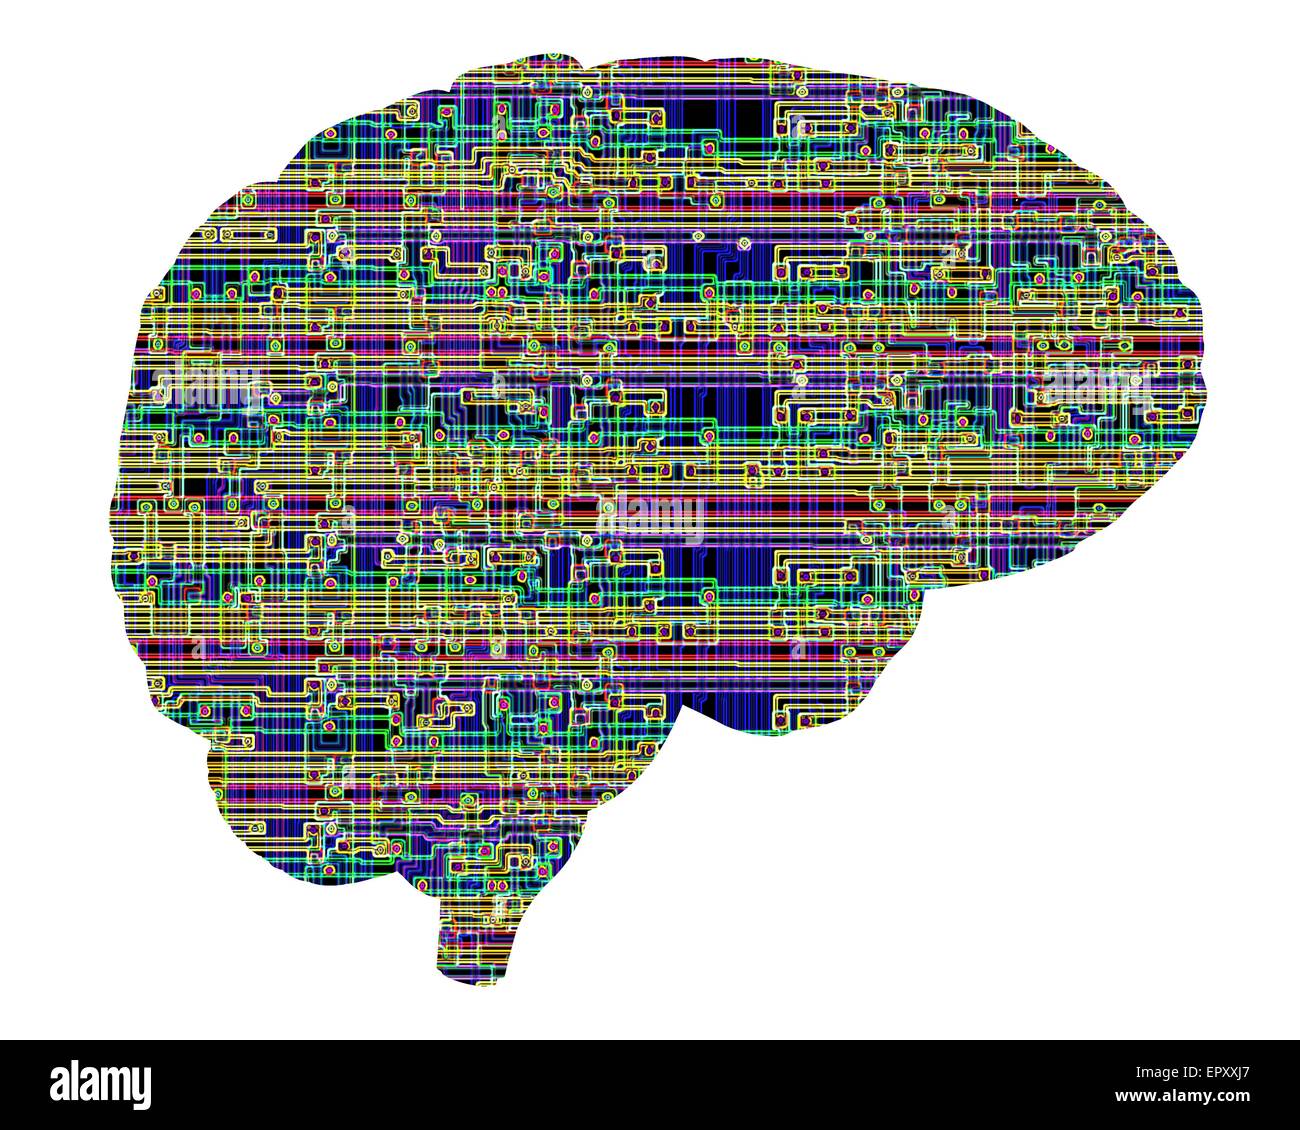 Künstliche Intelligenz und Kybernetik, Konzeptbild. Dieses Bild einer Computer-Chip-Struktur überlagert ein menschliches Gehirn, kann Konzepte wie Kybernetik, Gehirn-Implantate, Robotik und künstliche Intelligenz darstellen. Hier, die Chip-Struktur Stockfoto